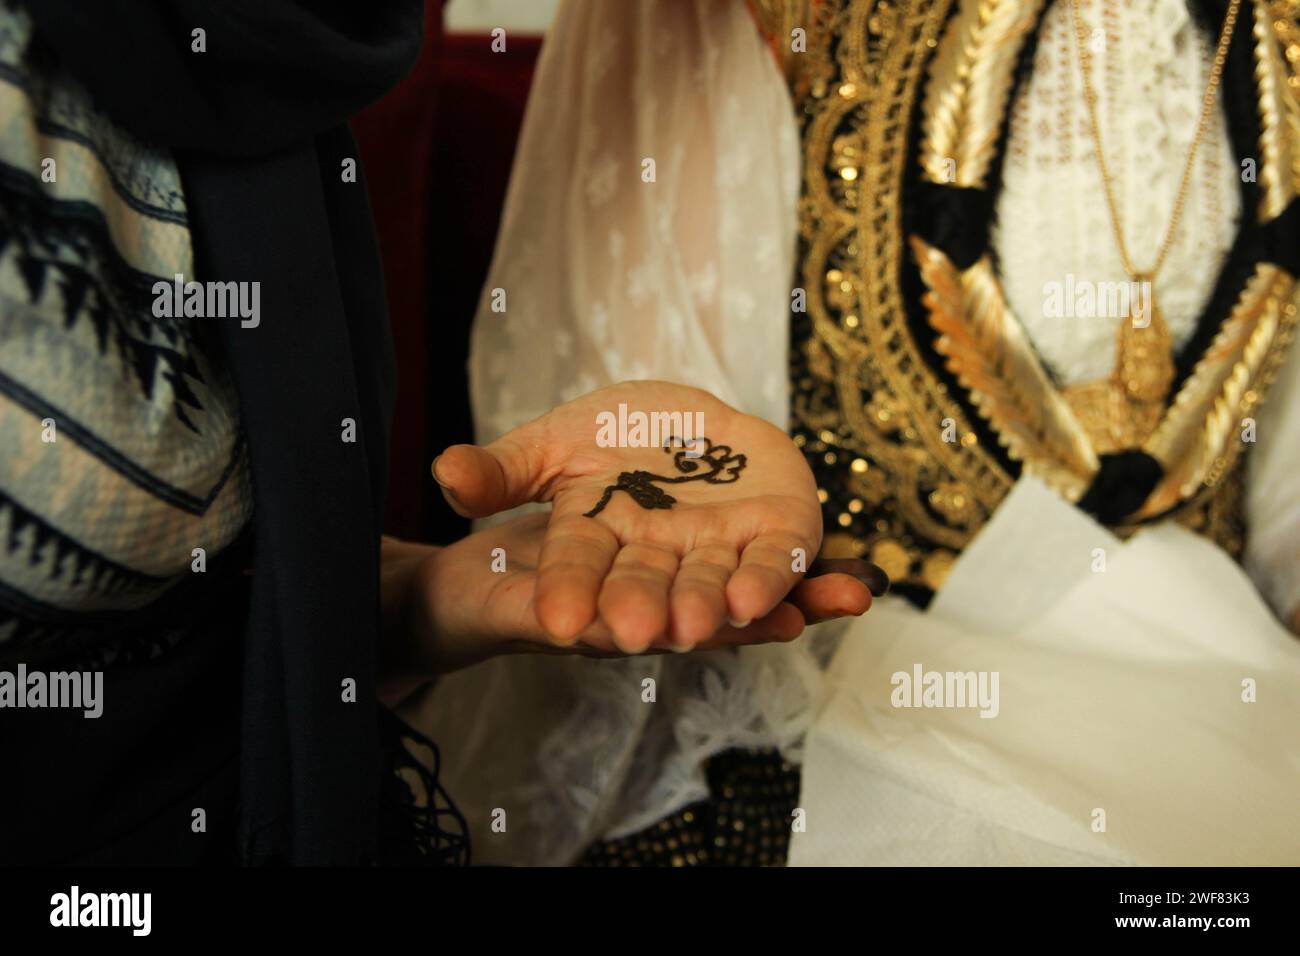 Tatuaggio all'henné con fiori sulla palma della sposa araba Foto Stock